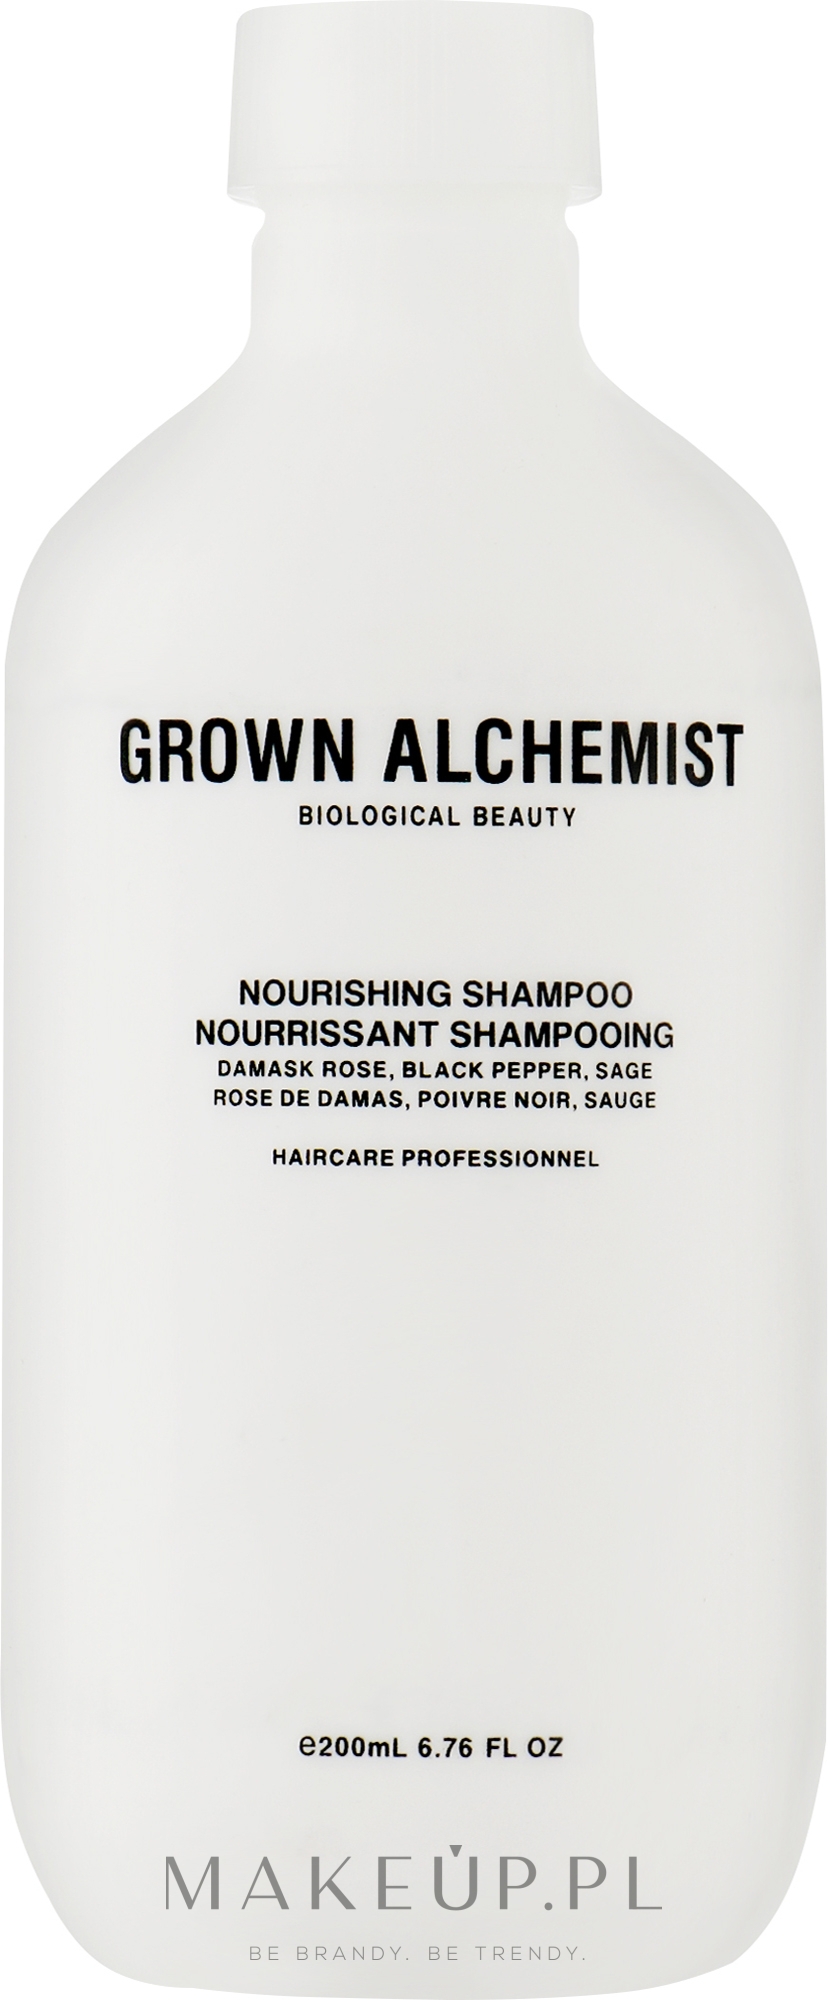 Odżywczy szampon do włosów - Grown Alchemist Nourishing Shampoo 0.6 Damask Rose, Black Pepper, Sage — Zdjęcie 200 ml